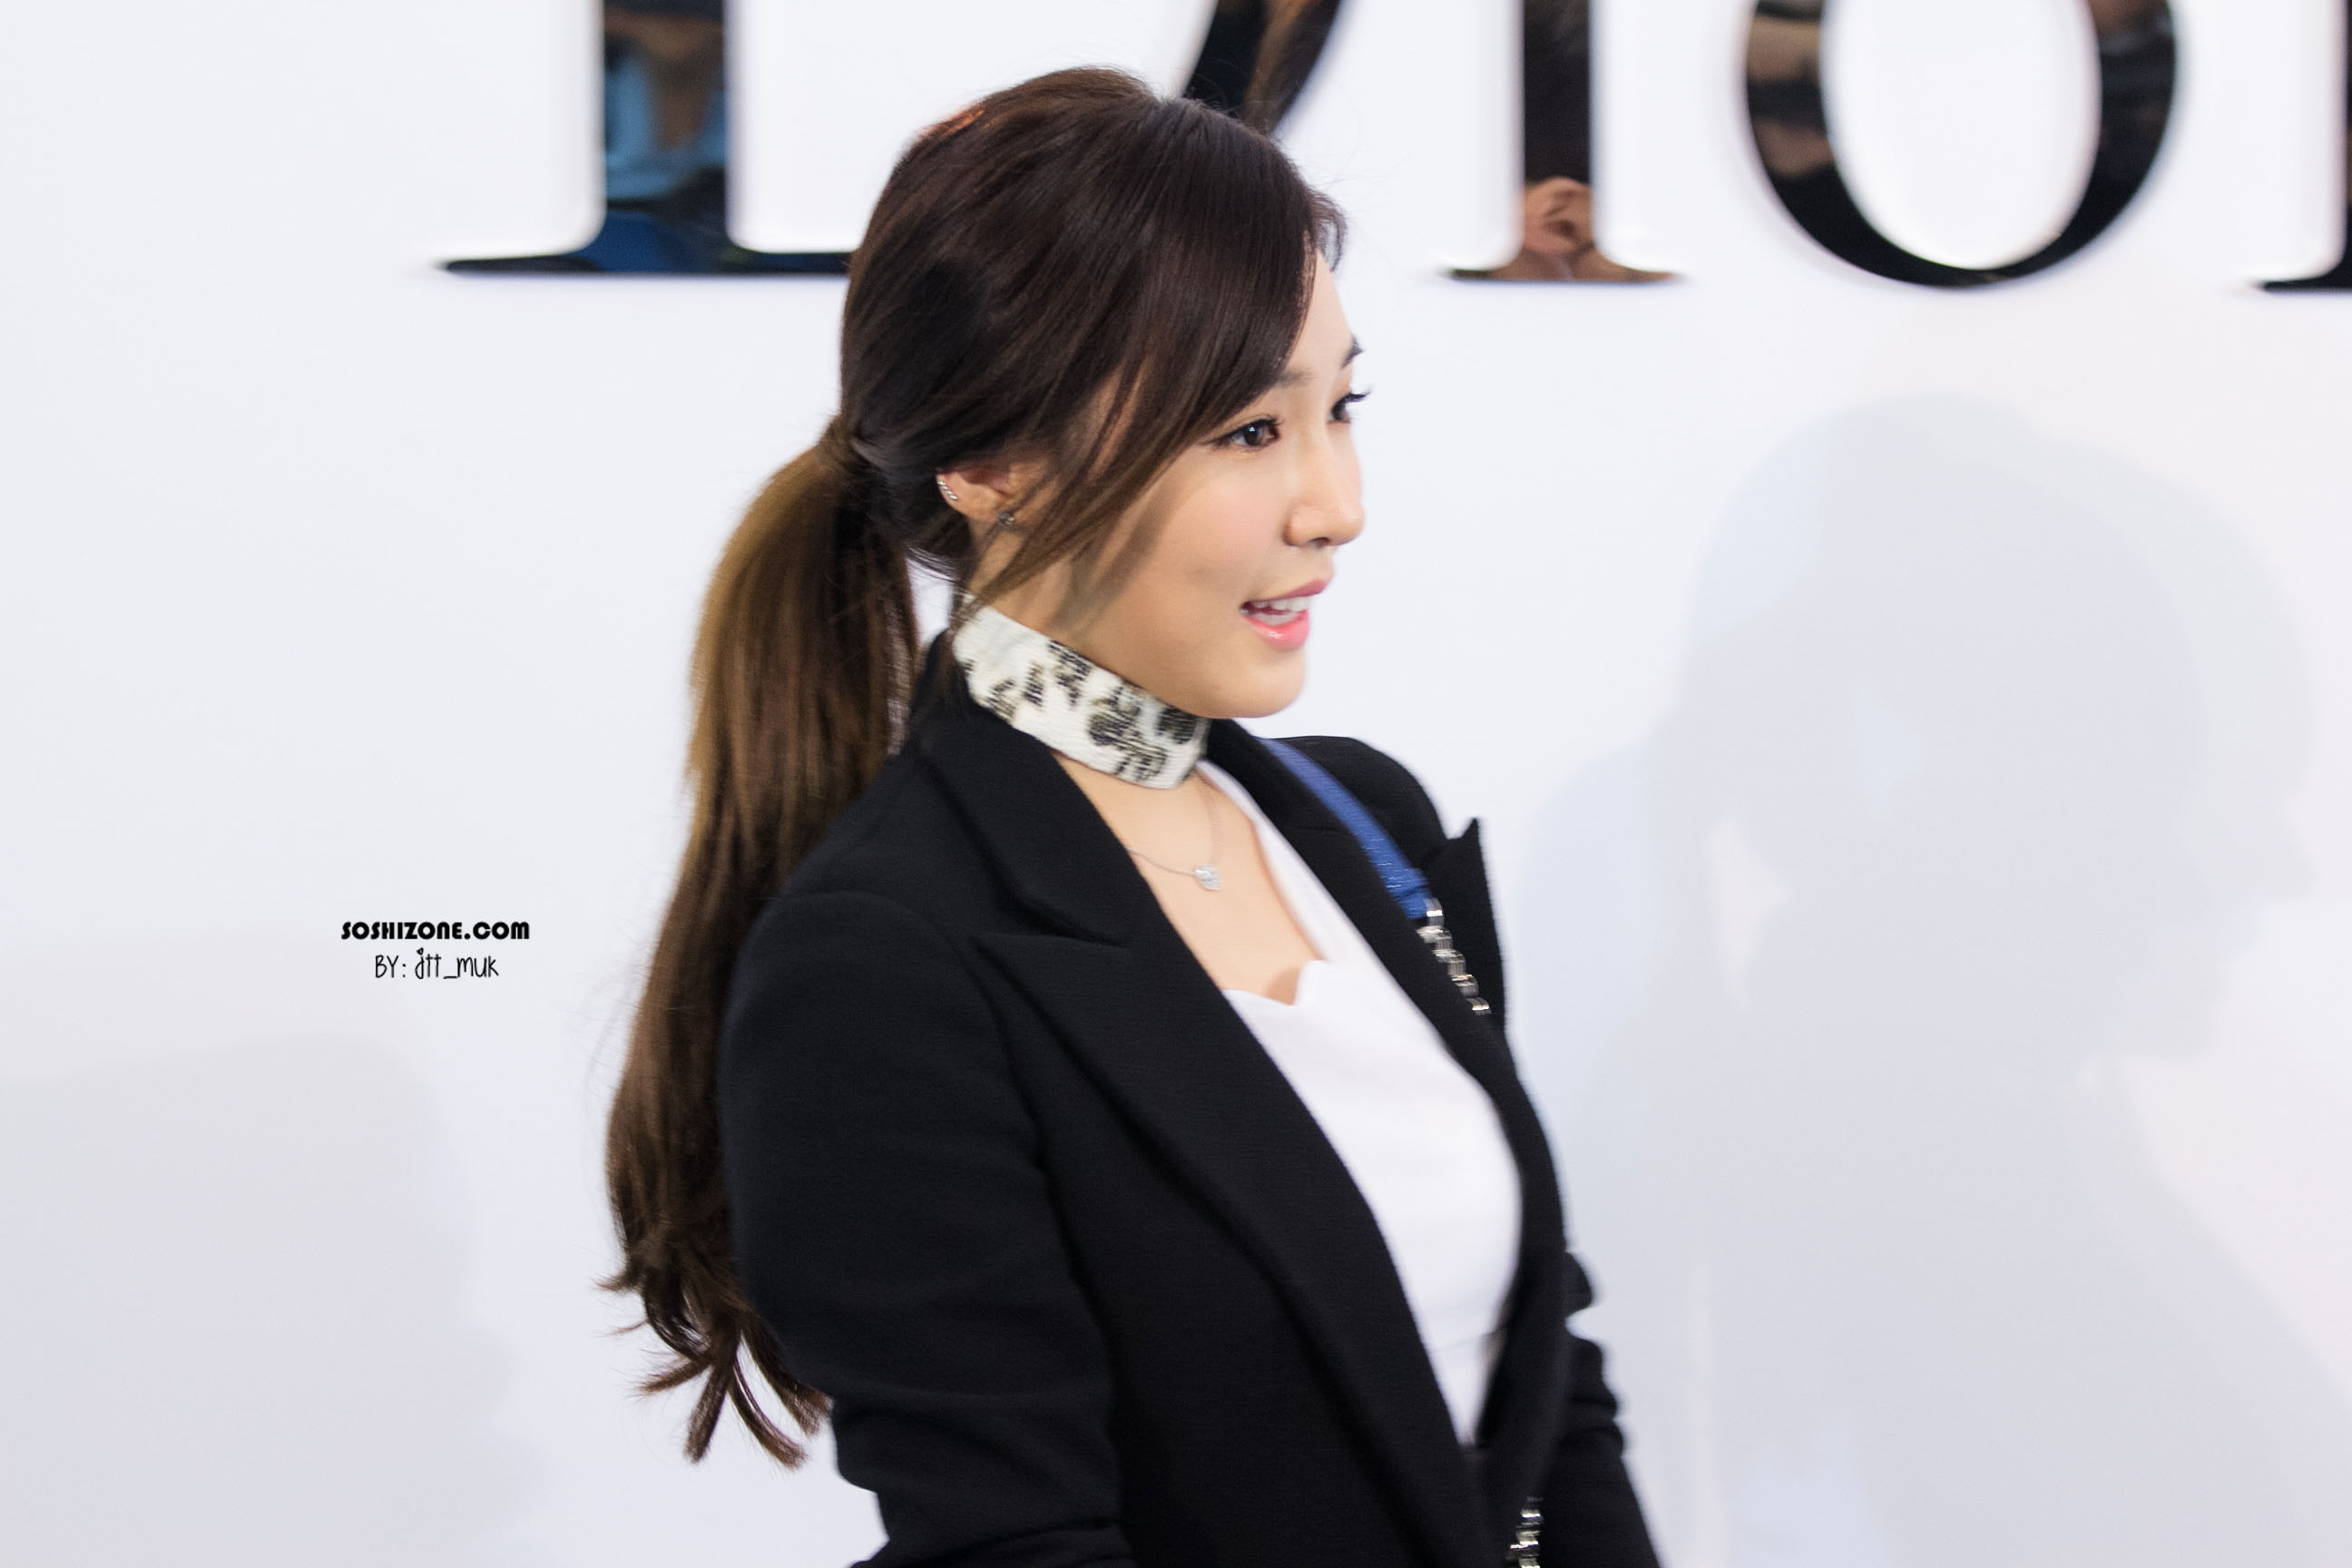 [PIC][17-02-2016]Tiffany khởi hành đi Thái Lan để tham dự sự kiện khai trương chi nhánh của thương hiệu "Christian Dior" vào hôm nay - Page 14 2251A8395728D32D057824